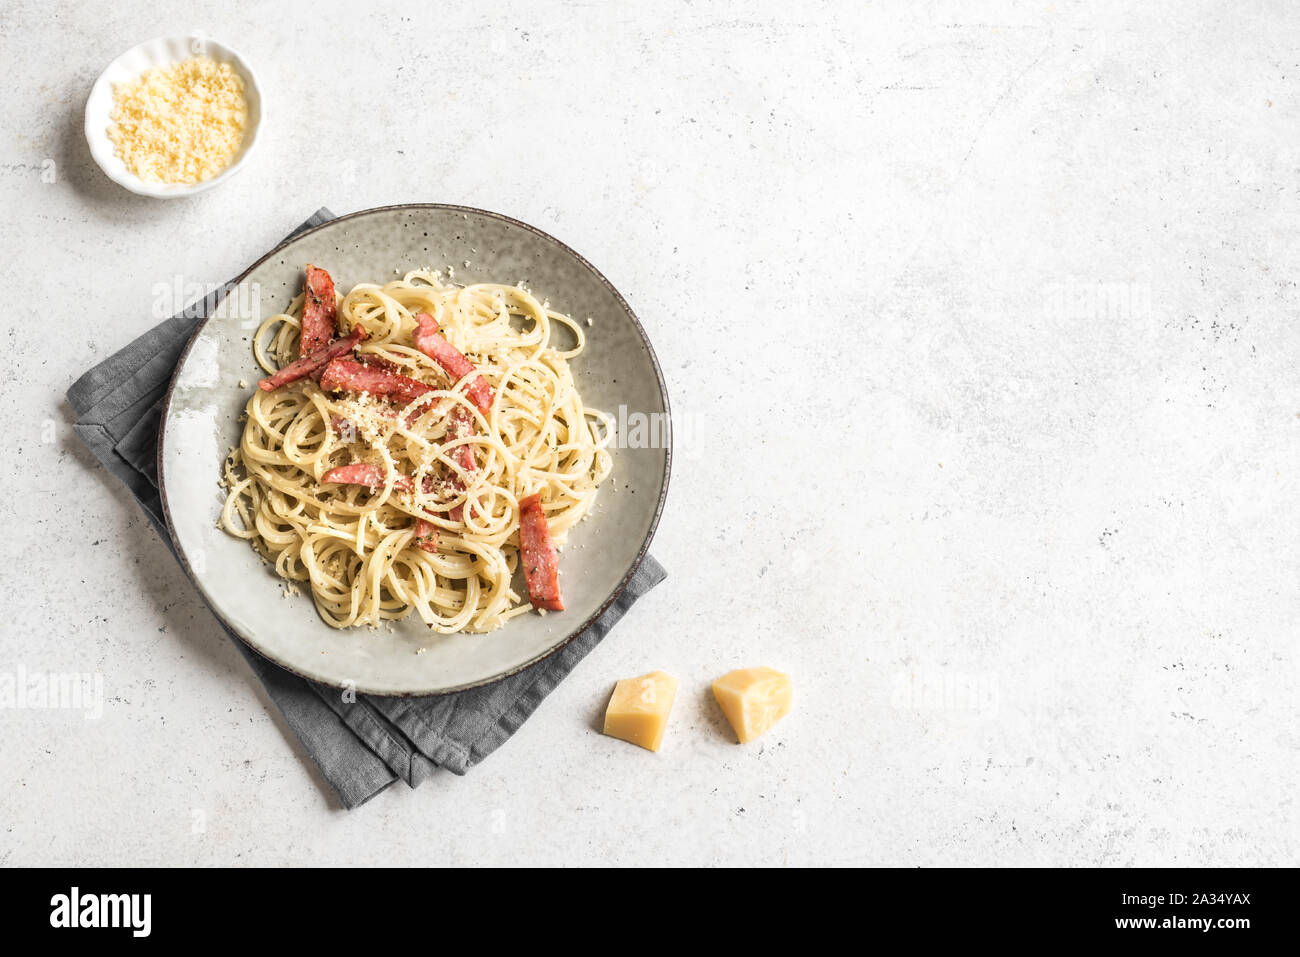 Les pâtes à la Carbonara, spaghetti avec bacon, oeufs durs, fromage parmesan et sauce à la crème. La cuisine traditionnelle italienne. Pasta alla carbonara, vue du dessus, copiez sp Banque D'Images